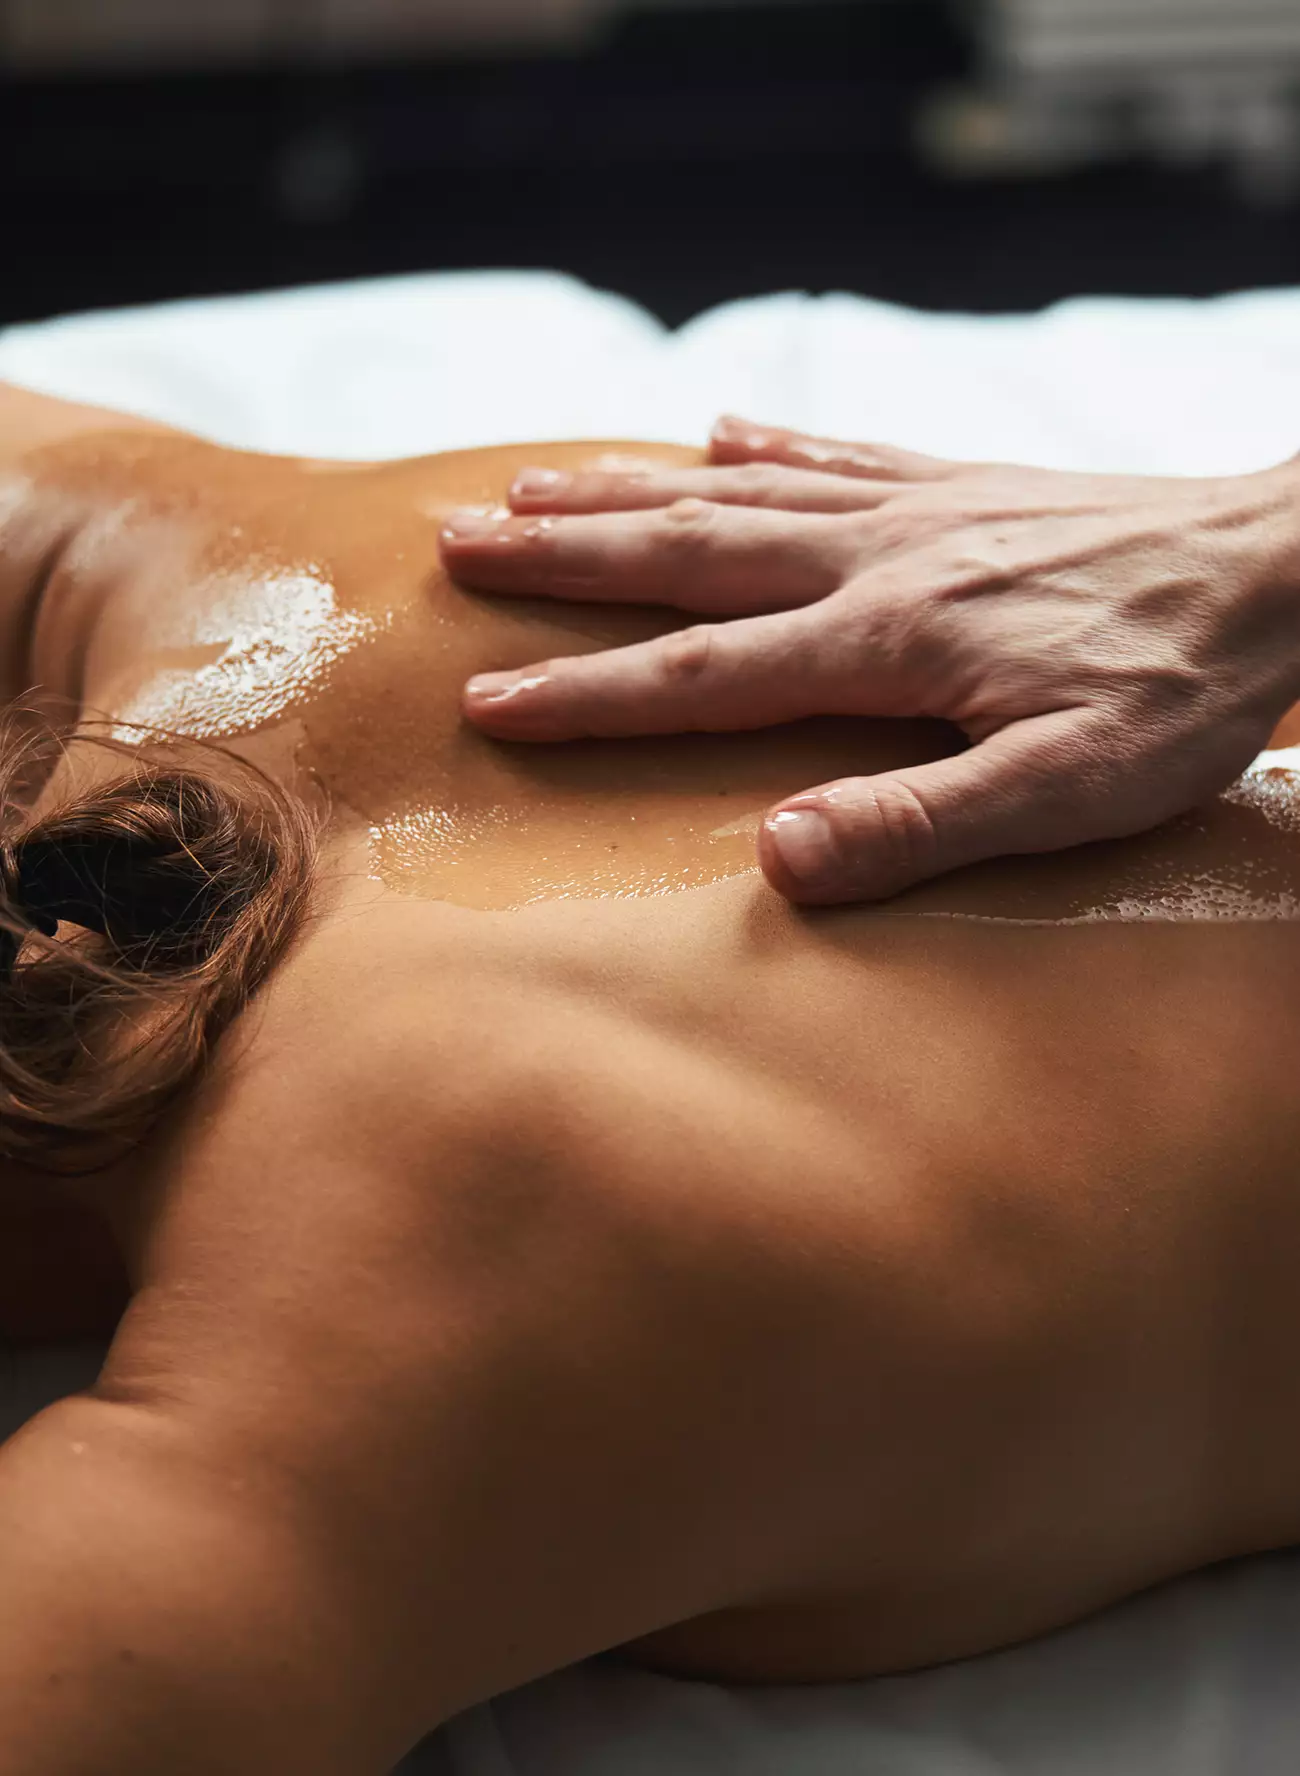 Hand massaging oiled upper back